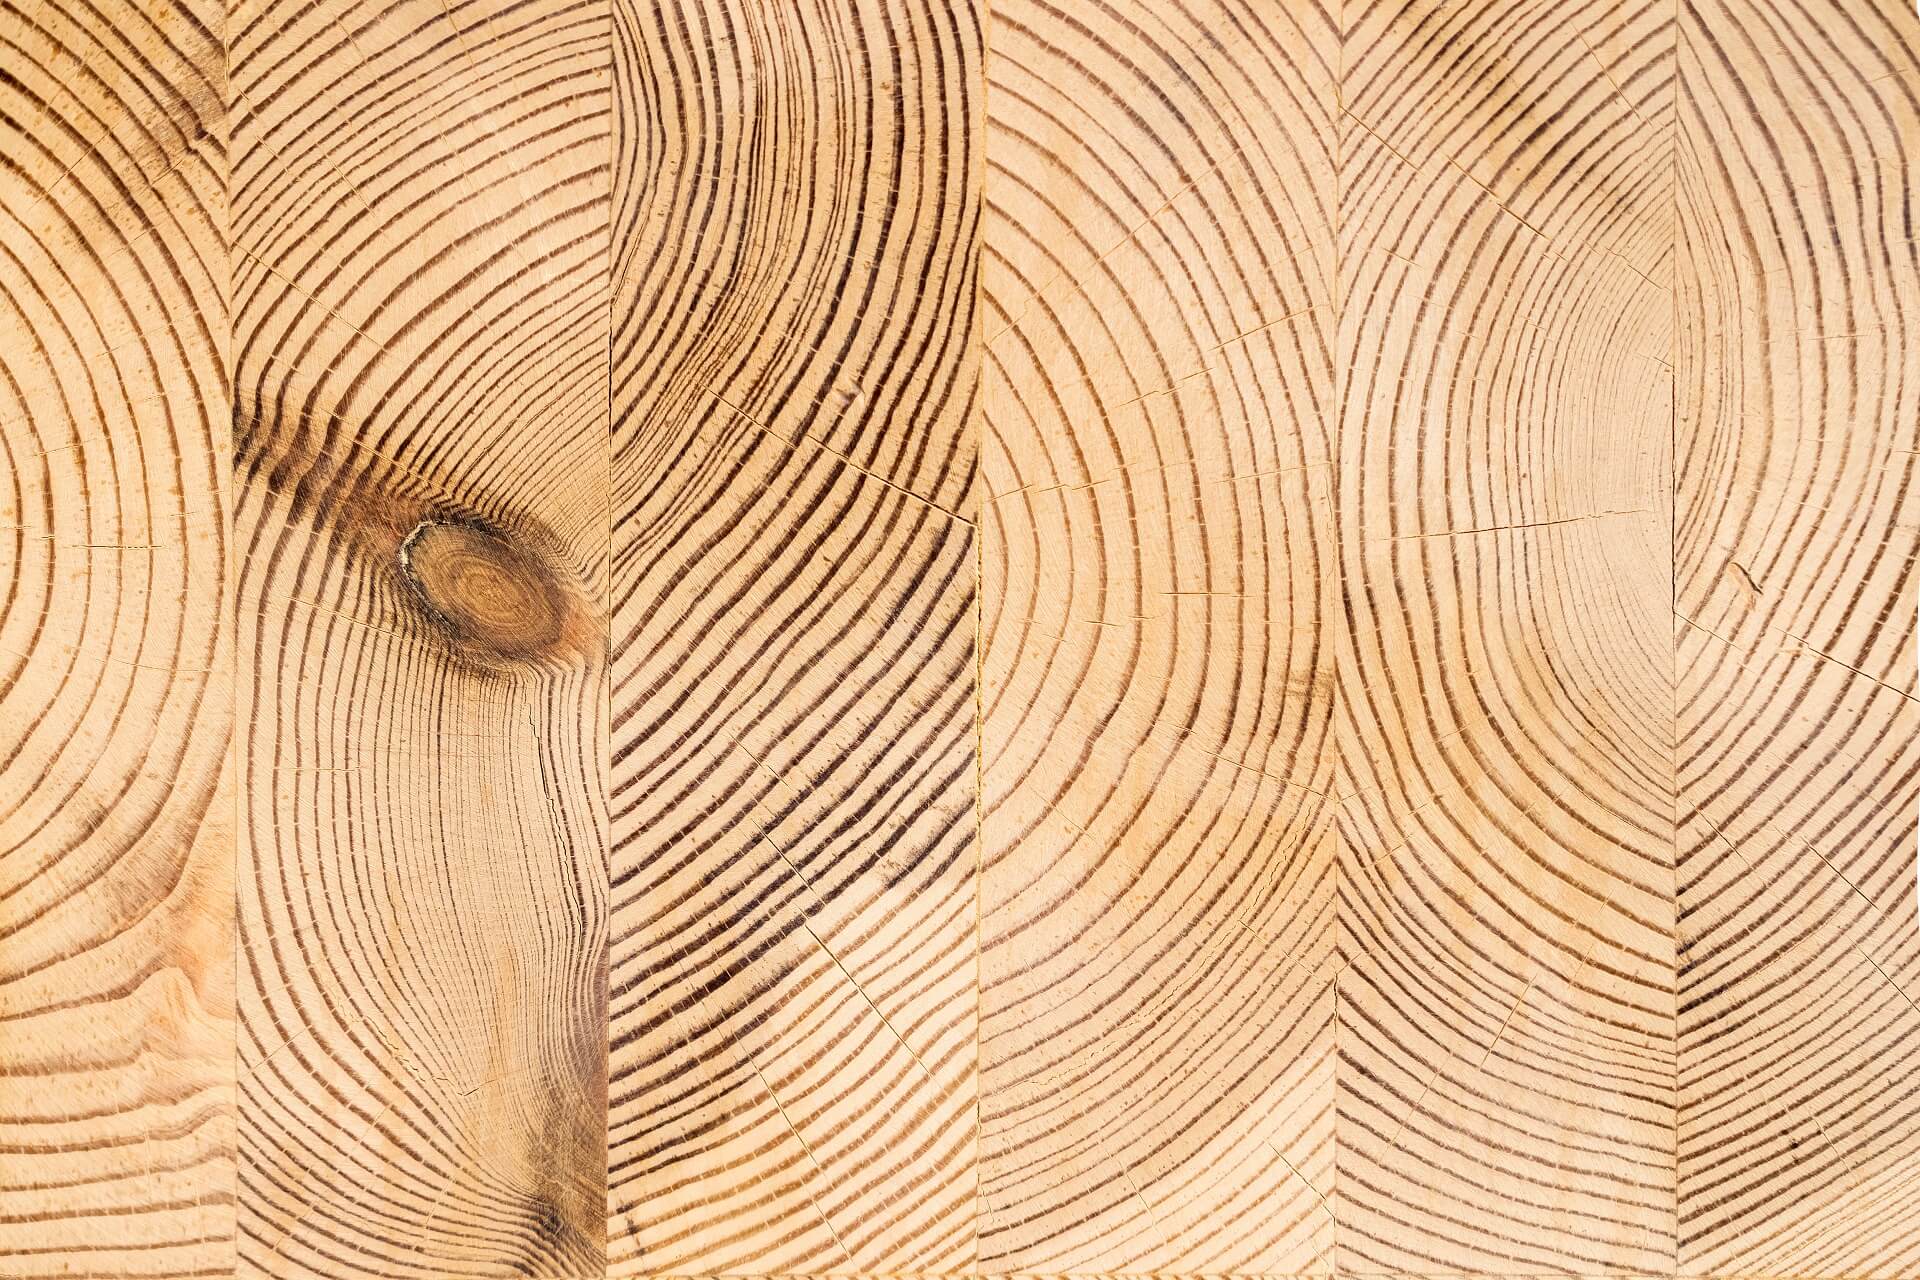 Ein Bild, das einen Querschnitt der ästhetischen Holzstruktur zeigt, speziell für das Holzhaus entwickelt. Erfahren Sie mehr über die handwerkliche Präzision und die einzigartige Ästhetik dieser Holztextur, die das Holzhaus bereichert.